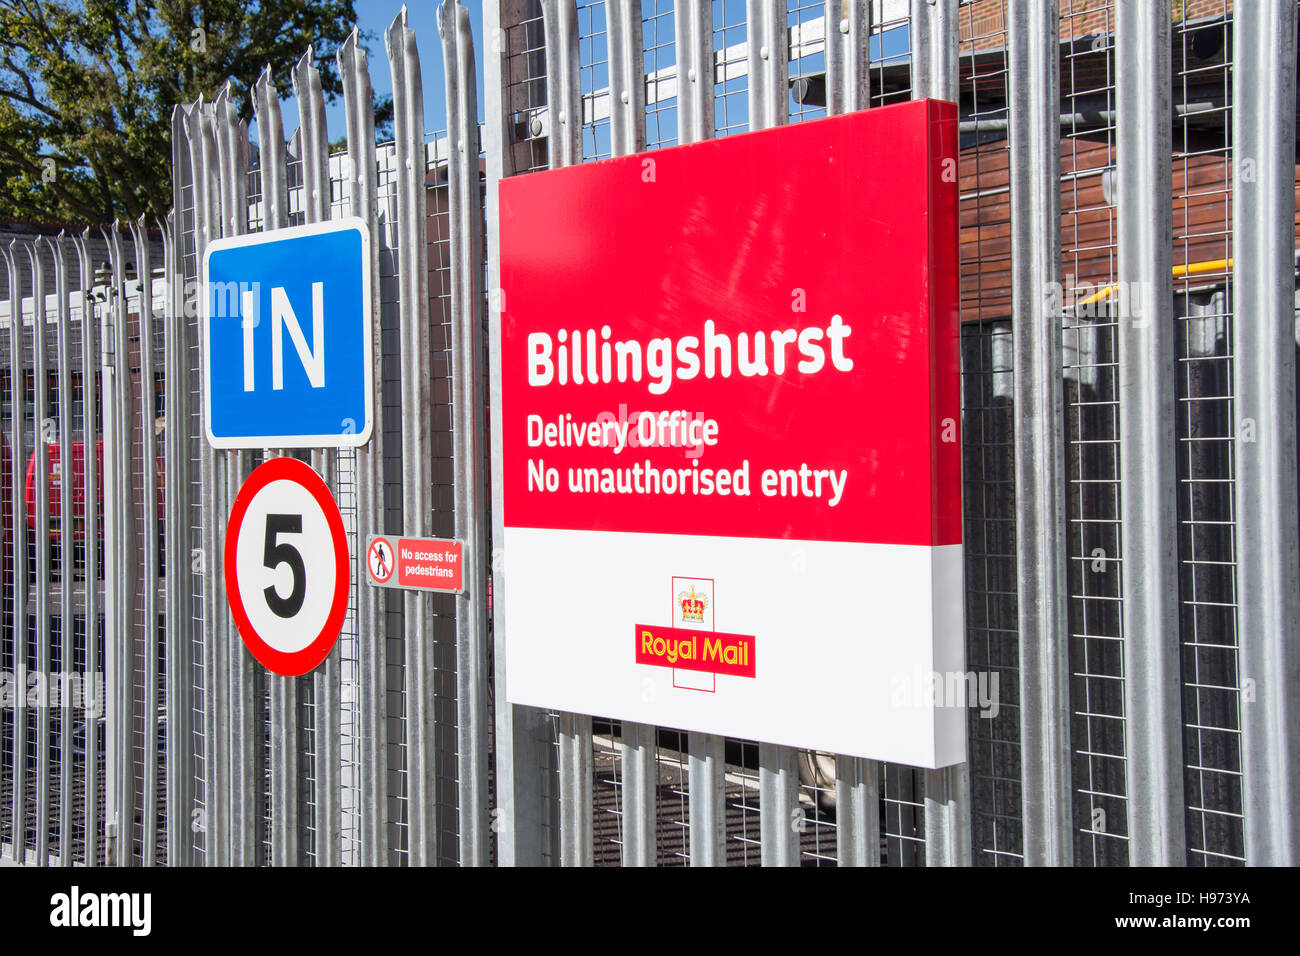 Portail fermé à Billingshurst Post Office Delivery Office Billingshurst, West Sussex, Angleterre, Royaume-Uni Banque D'Images